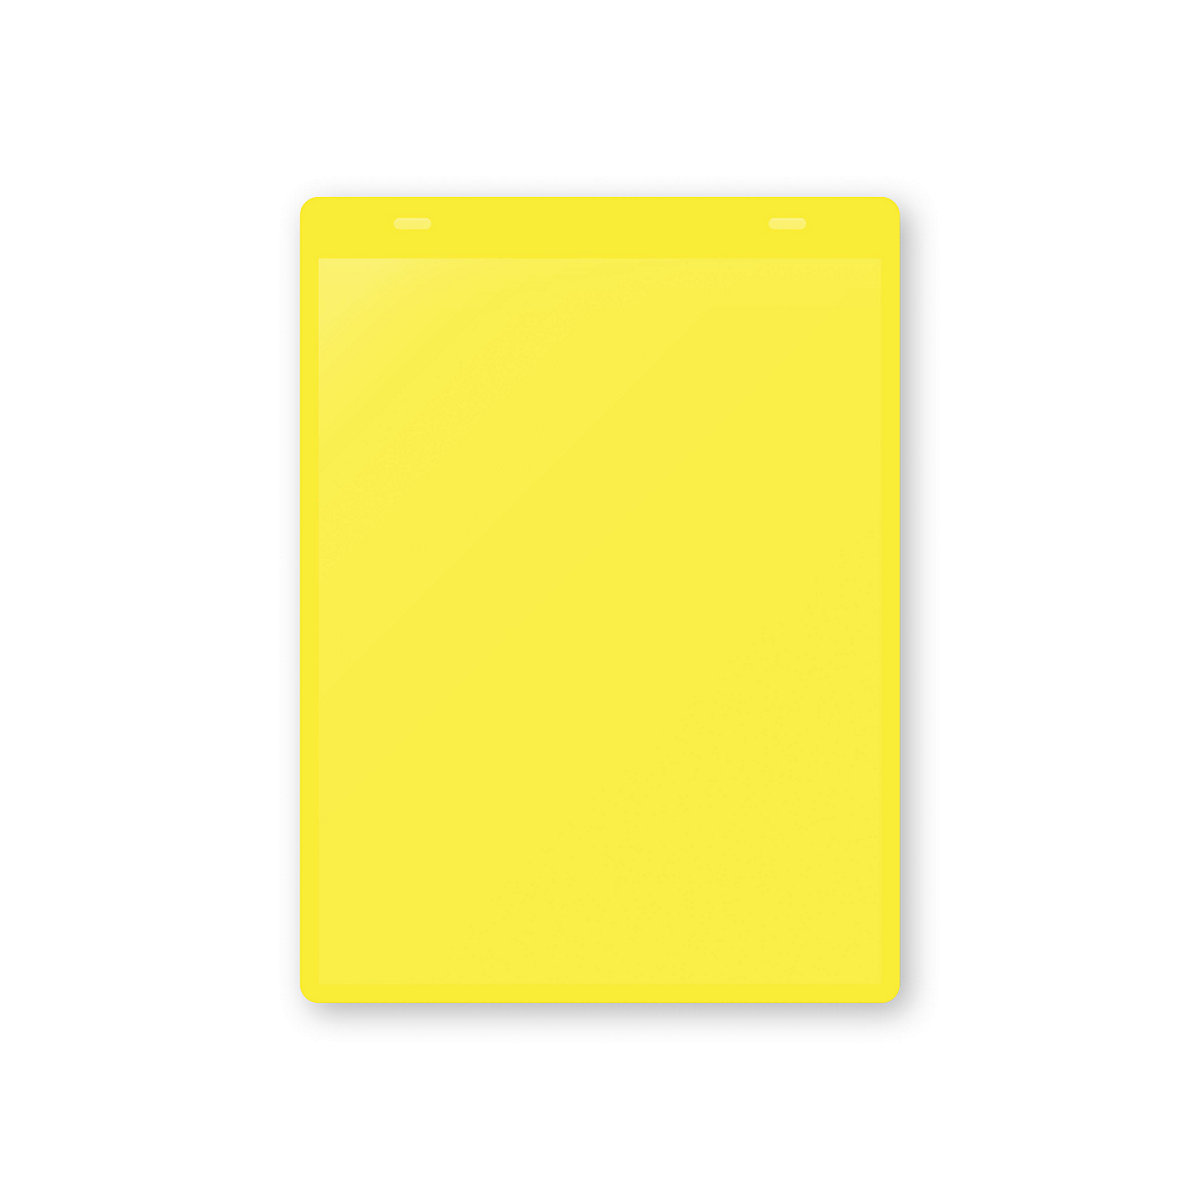 Dokumentumtartó tasakok akasztópánttal, DIN A5, álló, cs. e. 10 db, sárga